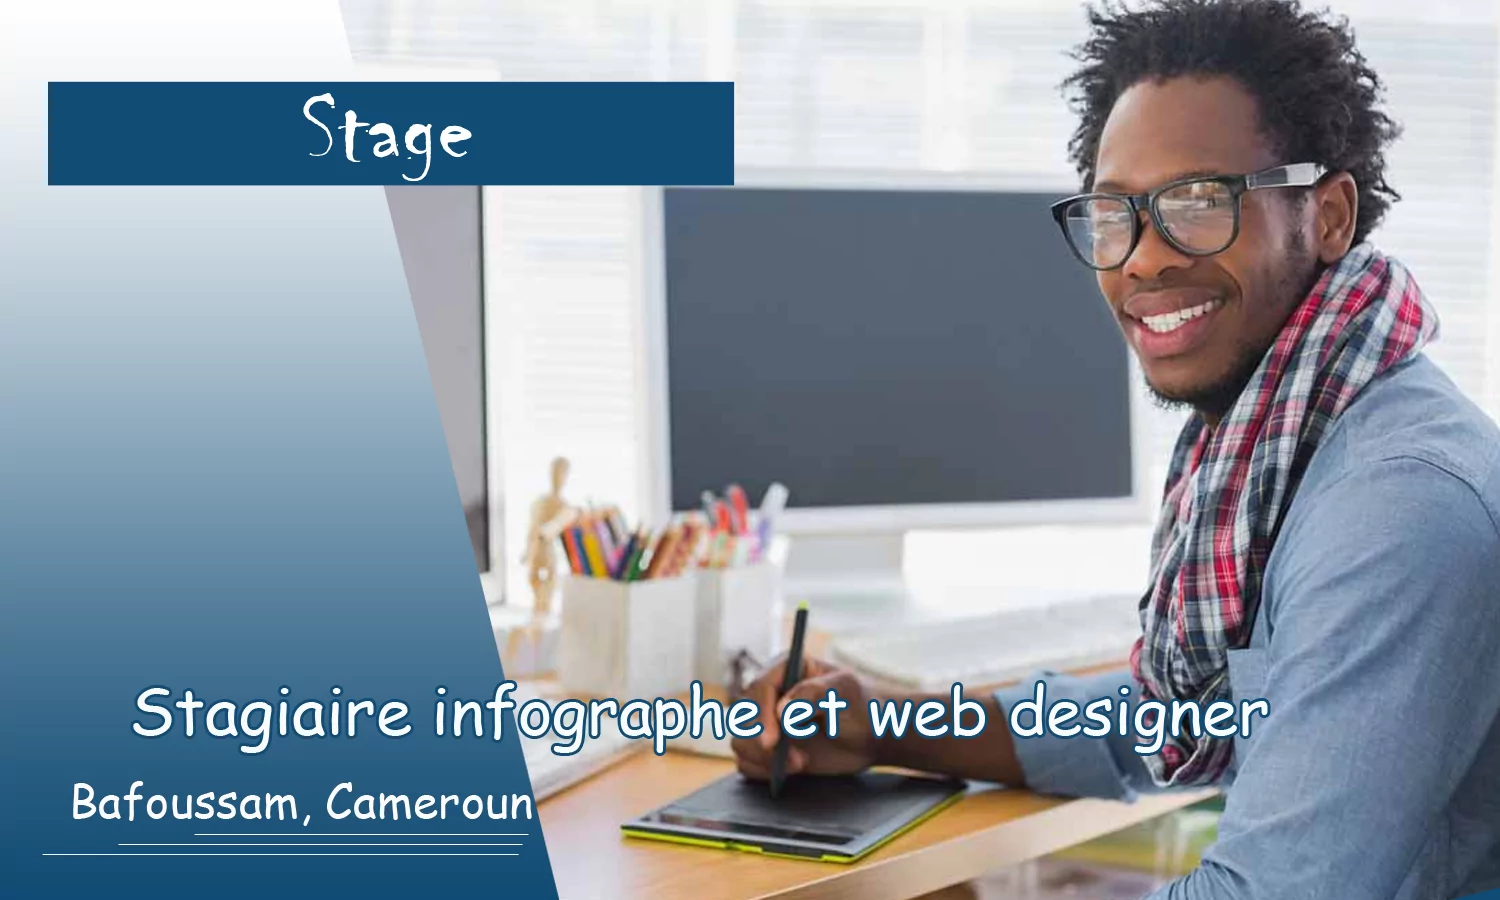 Avis de recrutement d’un stagiaire infographe et web designer, Bafoussam, Cameroun